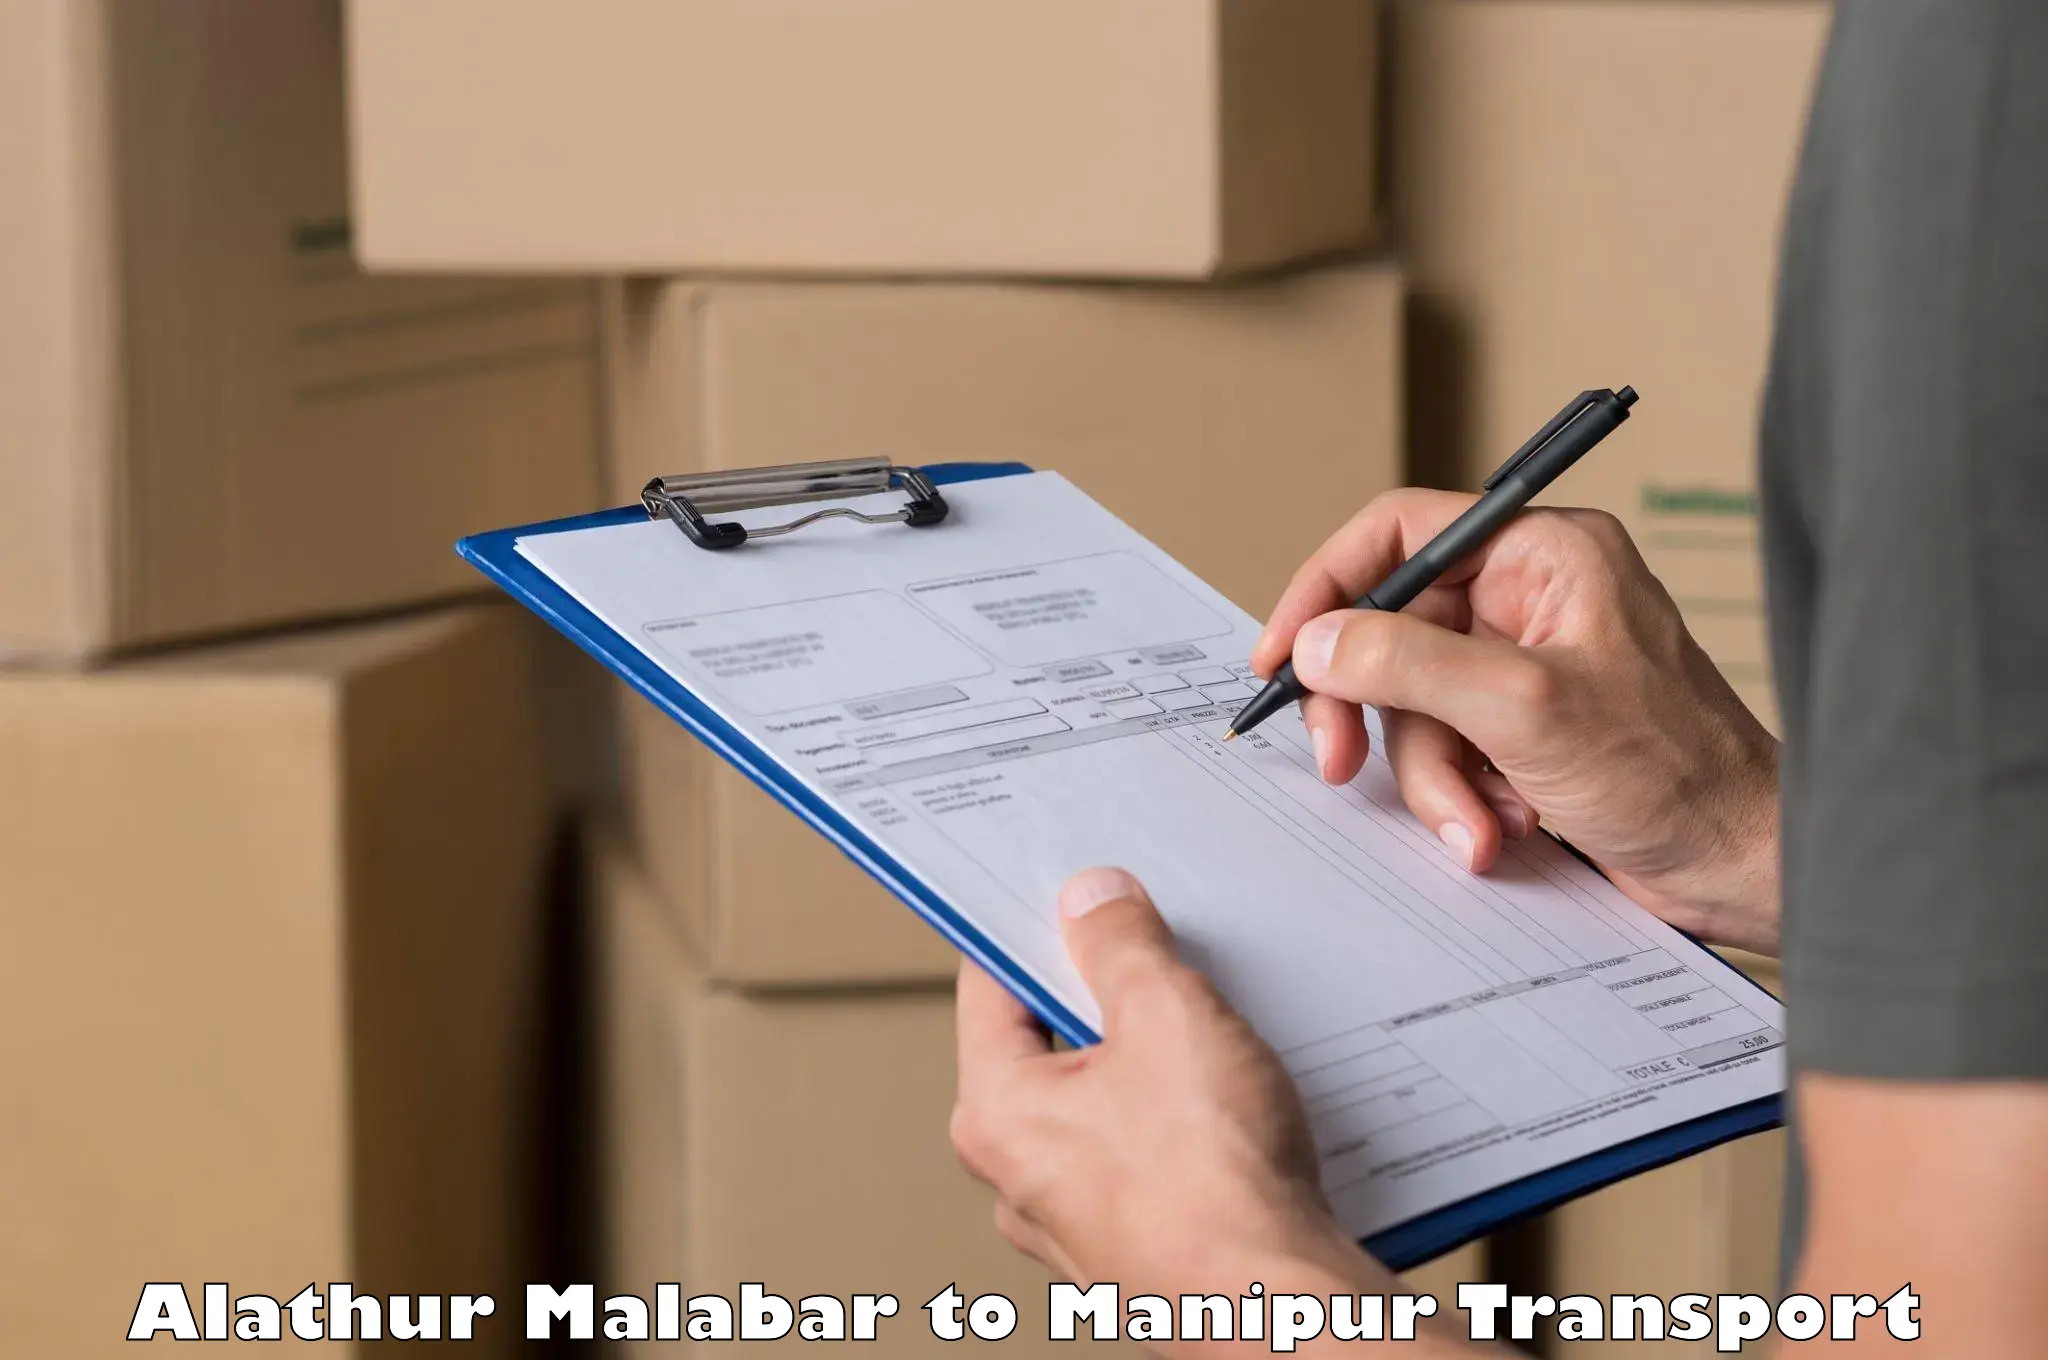 Pick up transport service Alathur Malabar to Tamenglong